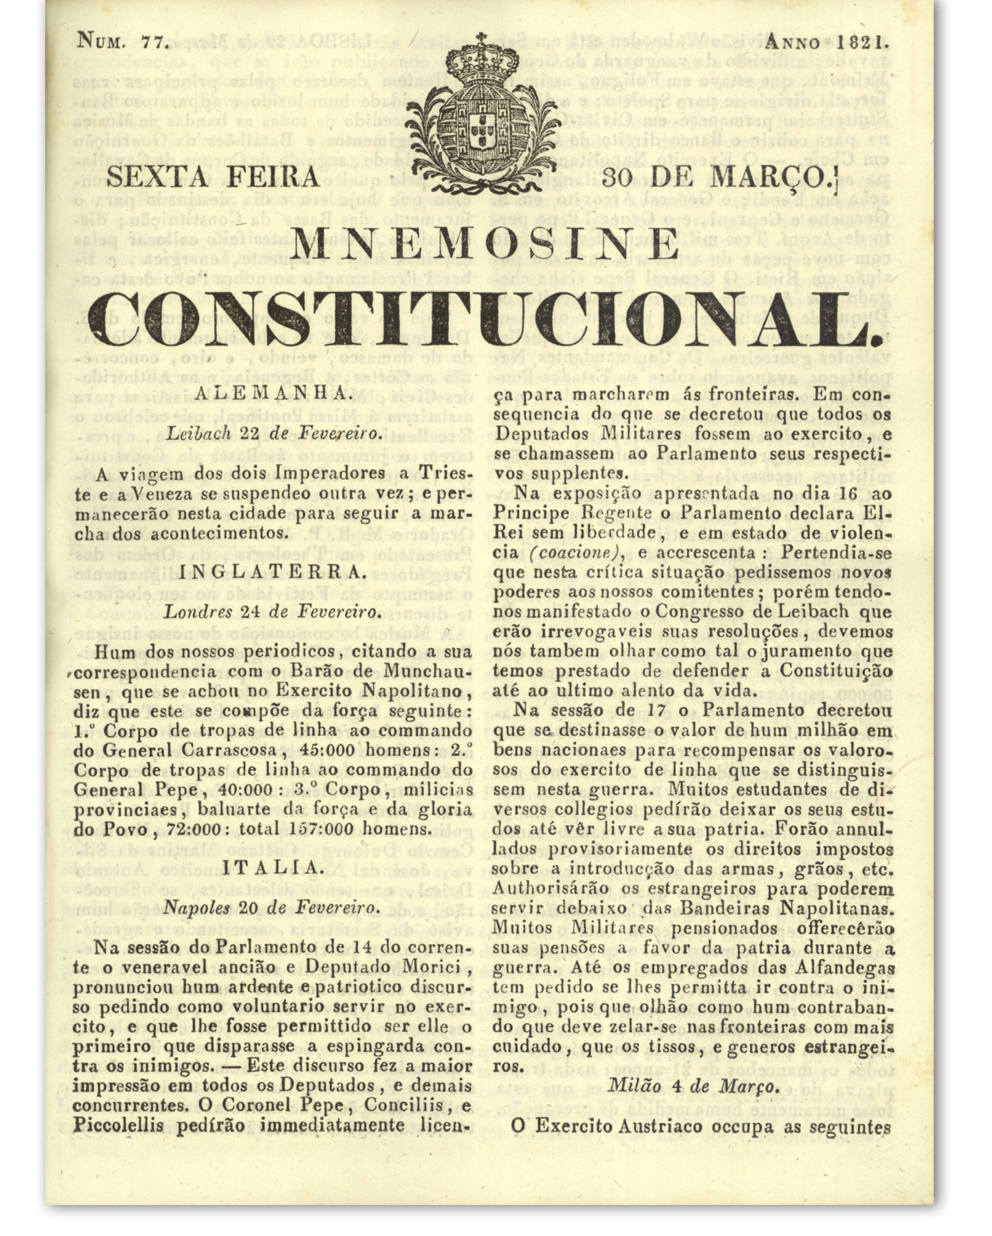 Mnemosine Constitucional. Lisboa : Imprensa Nacional, 1820-1821. Cota: APP-638